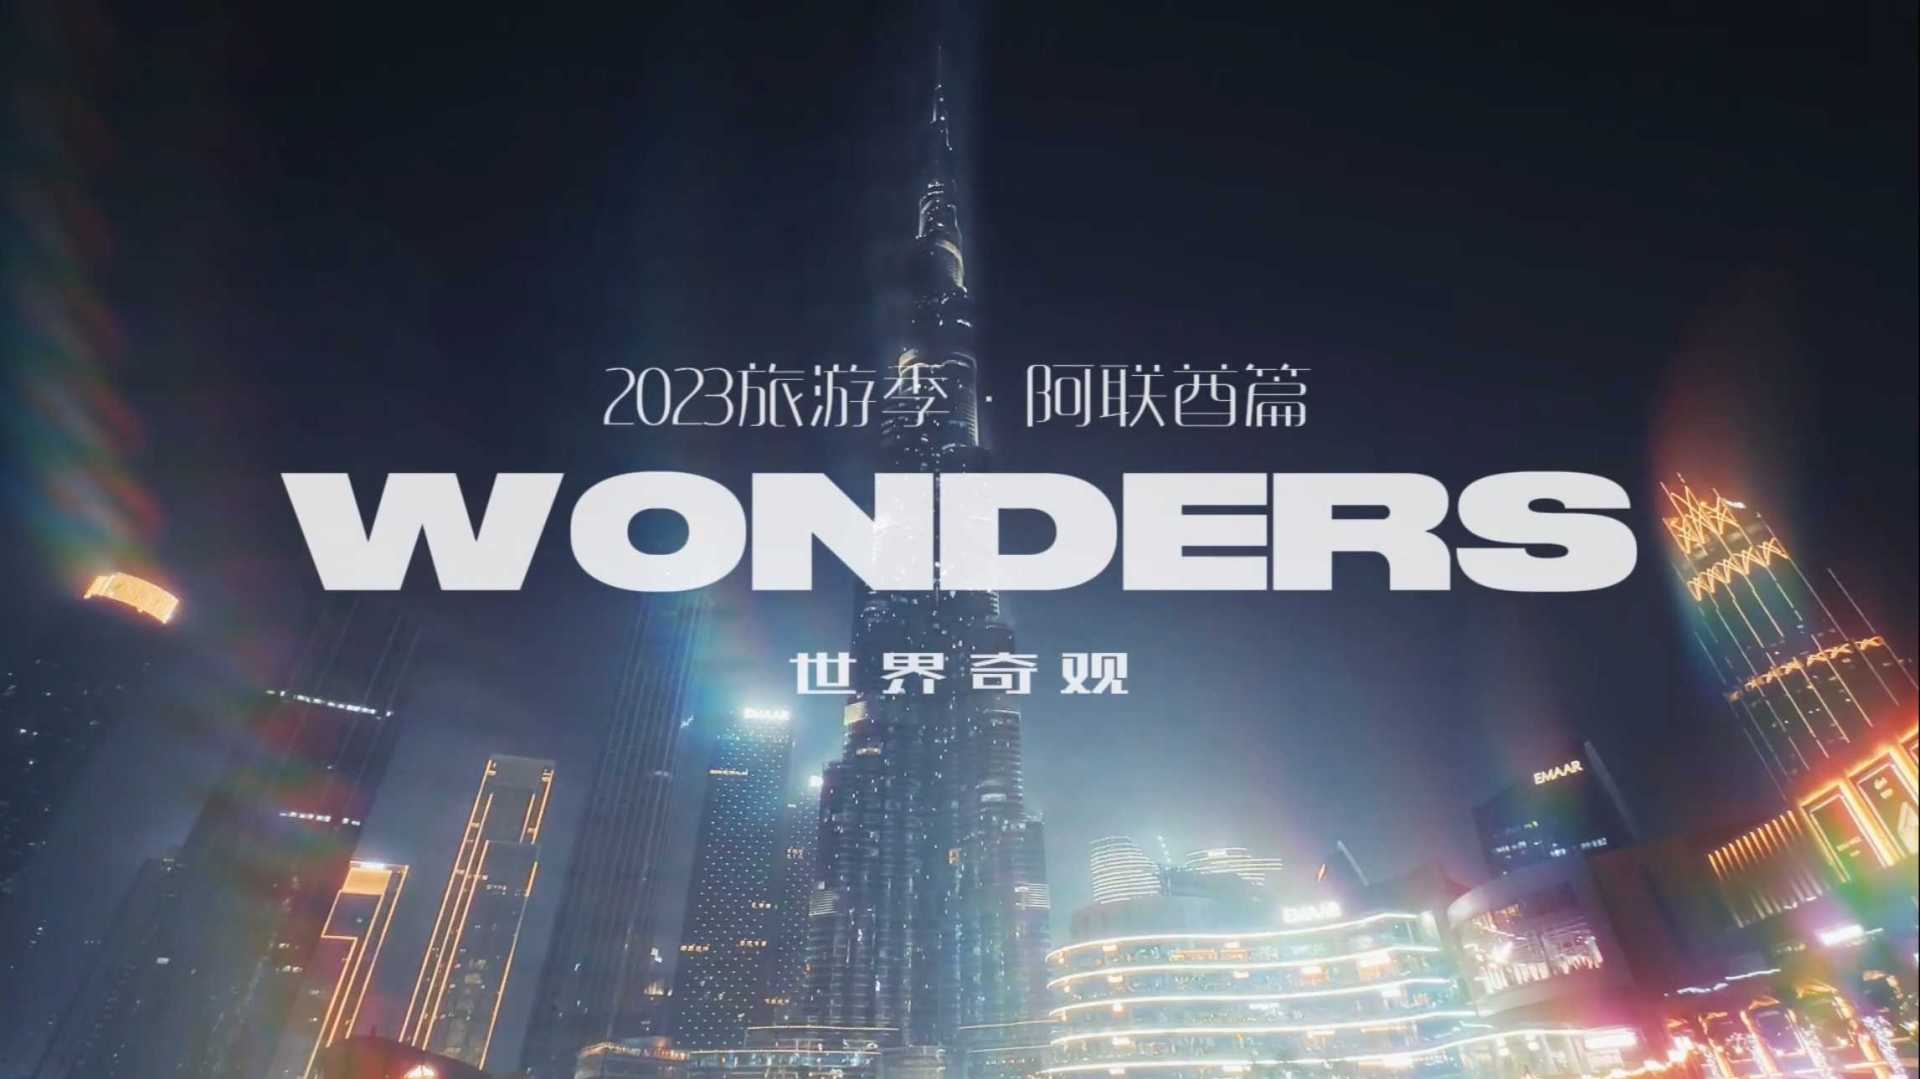 2023旅游季 · 阿联酋篇 第5️⃣集《Wonders 世界奇观（下）》